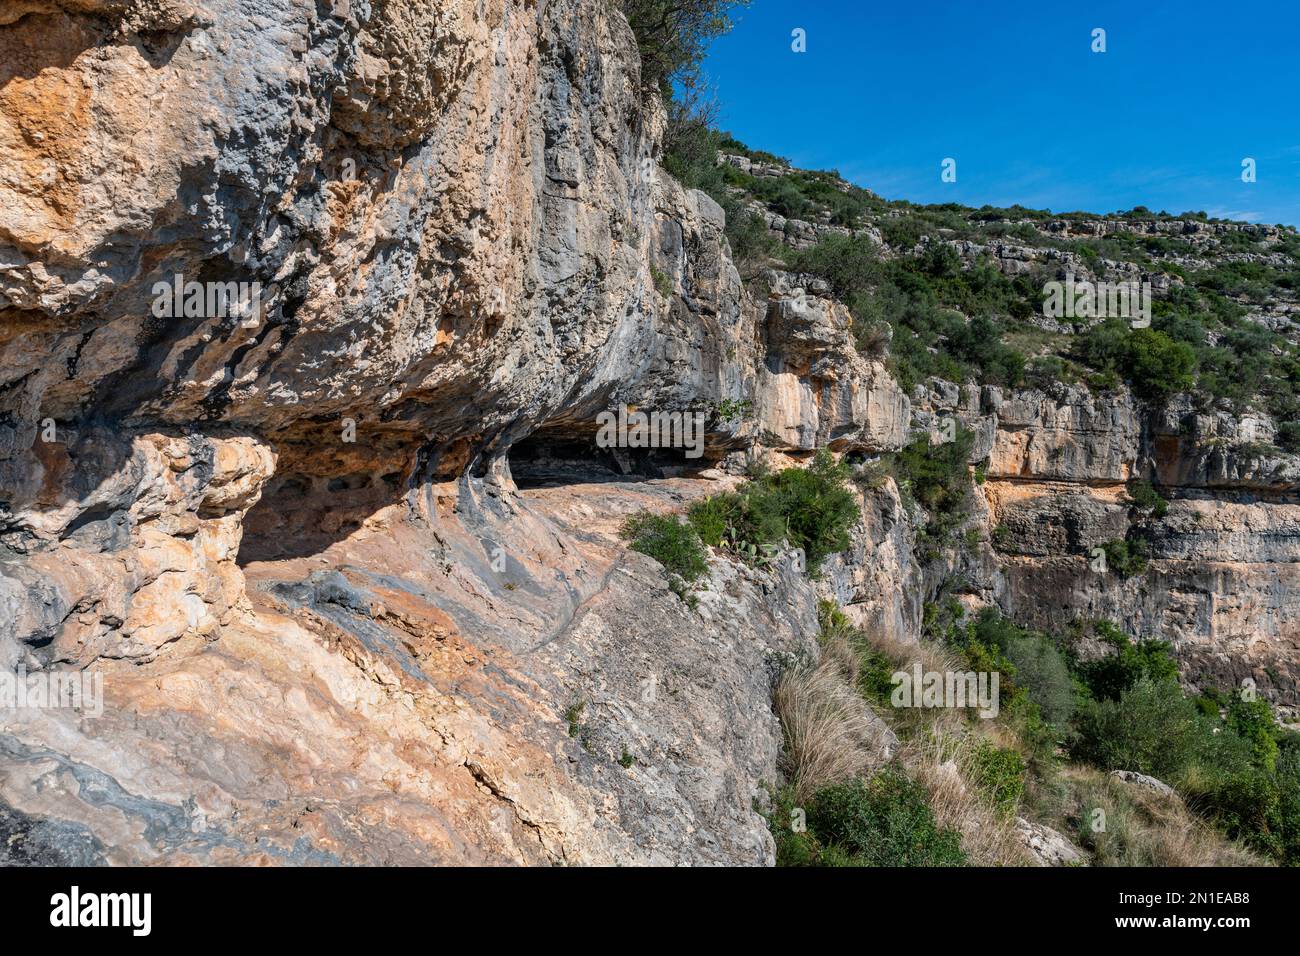 Überhang, Felskunst des iberischen Mittelmeerraums, UNESCO-Weltkulturerbe, Ulldecona, Katalonien, Spanien, Europa Stockfoto